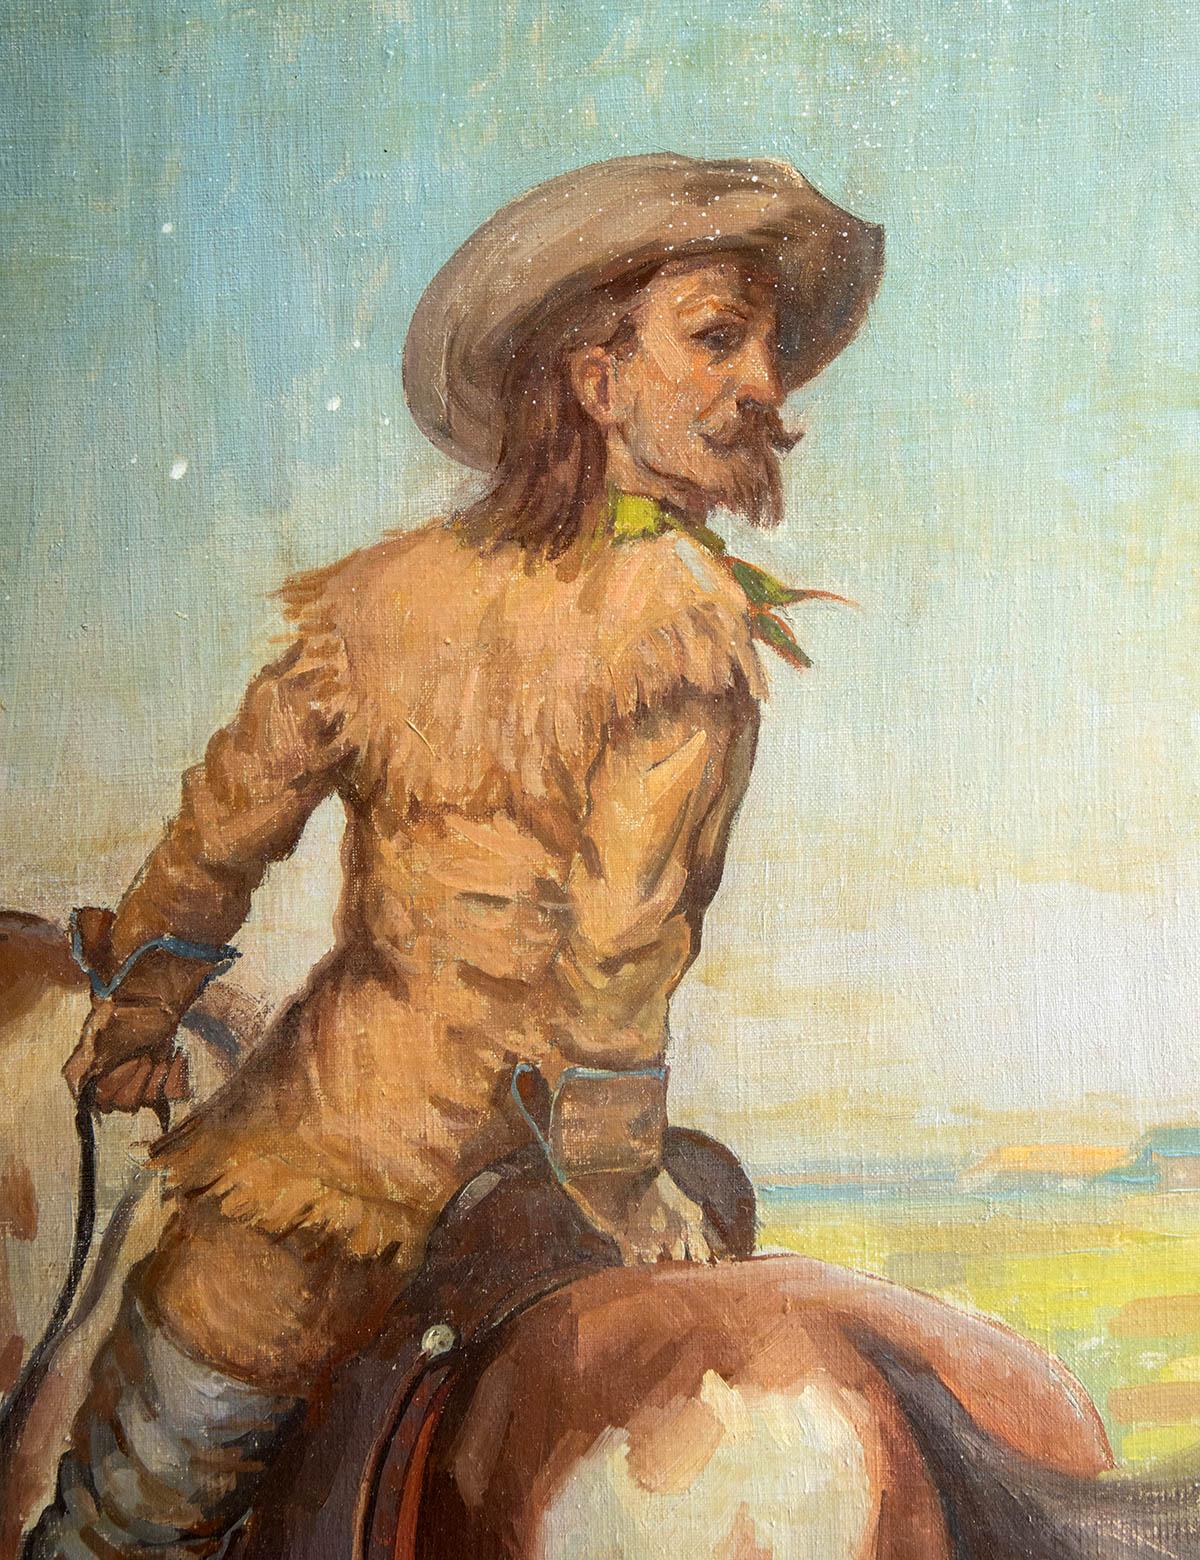 Heinz Muller - Buffalo Bill 36.125" x 28.125"